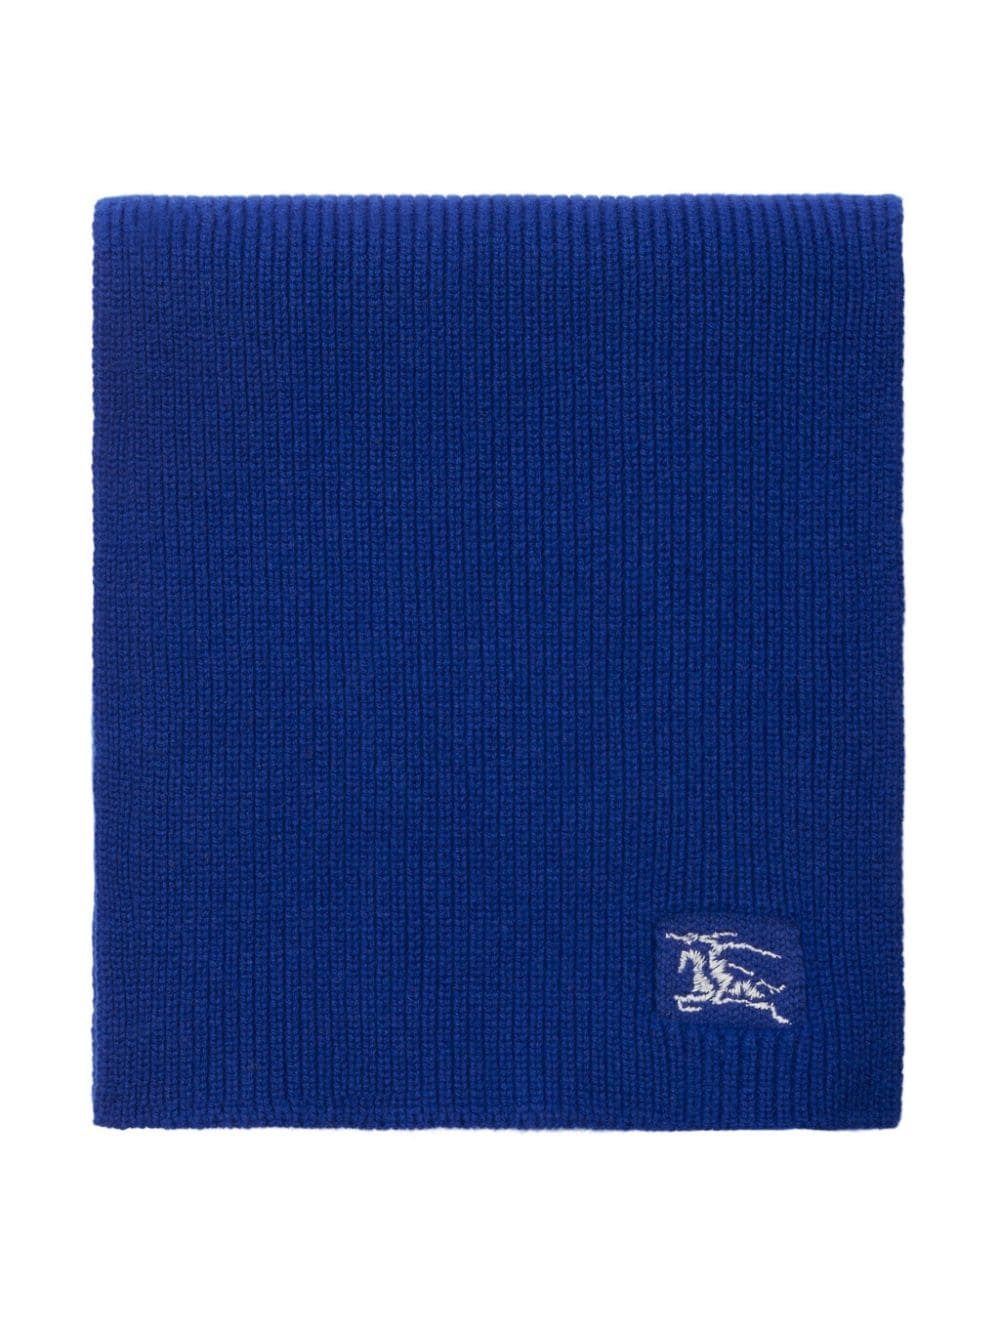 EKD-embroidered cashmere scarf<BR/><BR/><BR/>